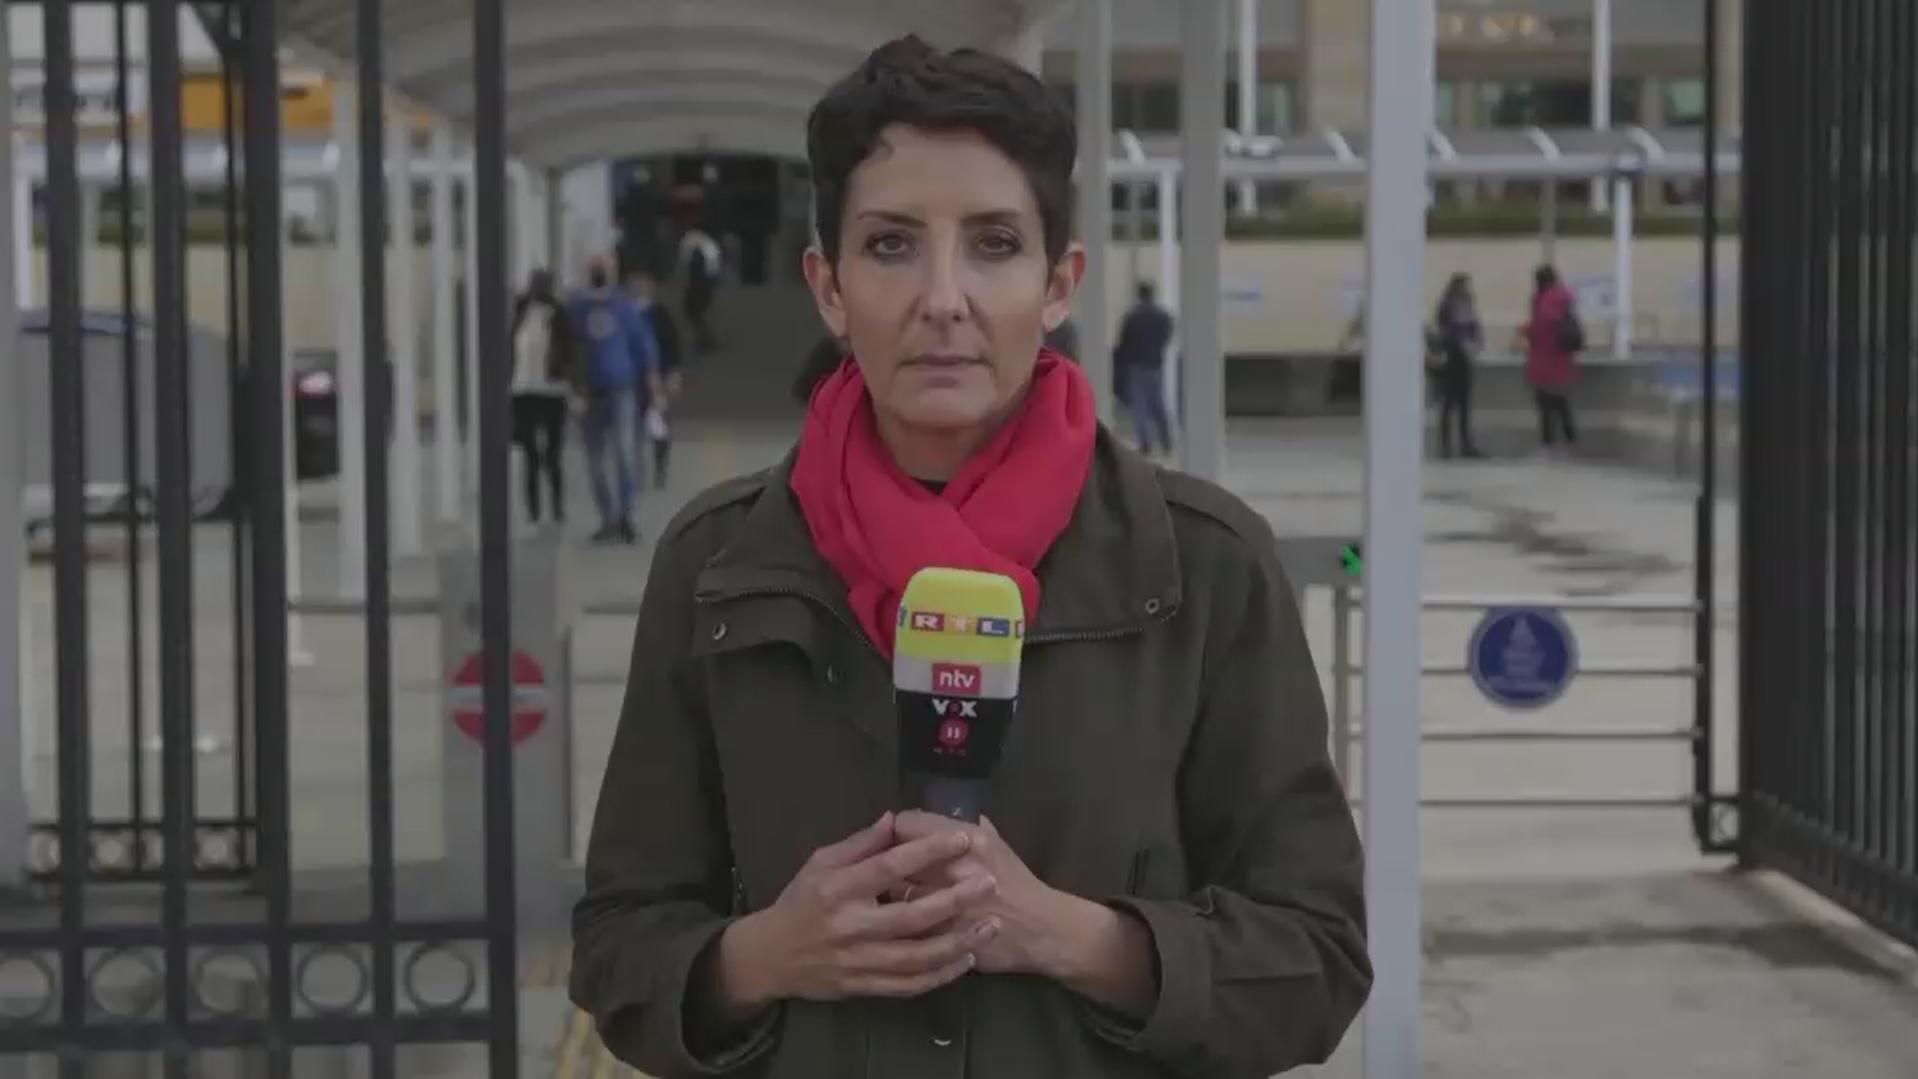 RTL-Reporterin Kavita Sharma ist vor Ort und berichtet über die Verurteilung des Arztes aus Wuppertal.